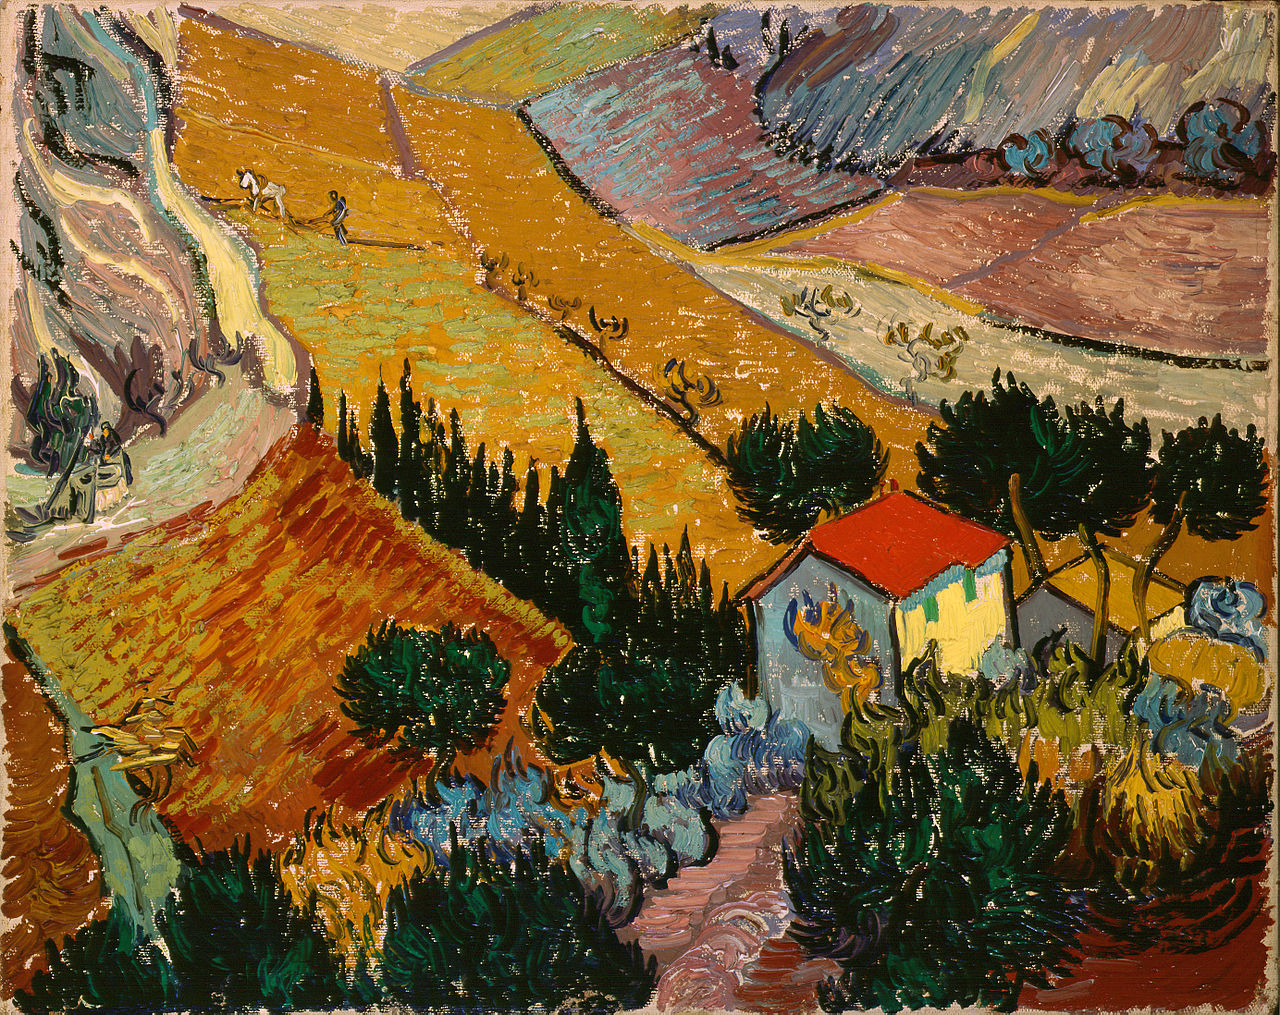 Paysage avec une maison et un laboureur by Vincent van Gogh - 1889 - 33 x 41.4 cm Musée de l'Ermitage